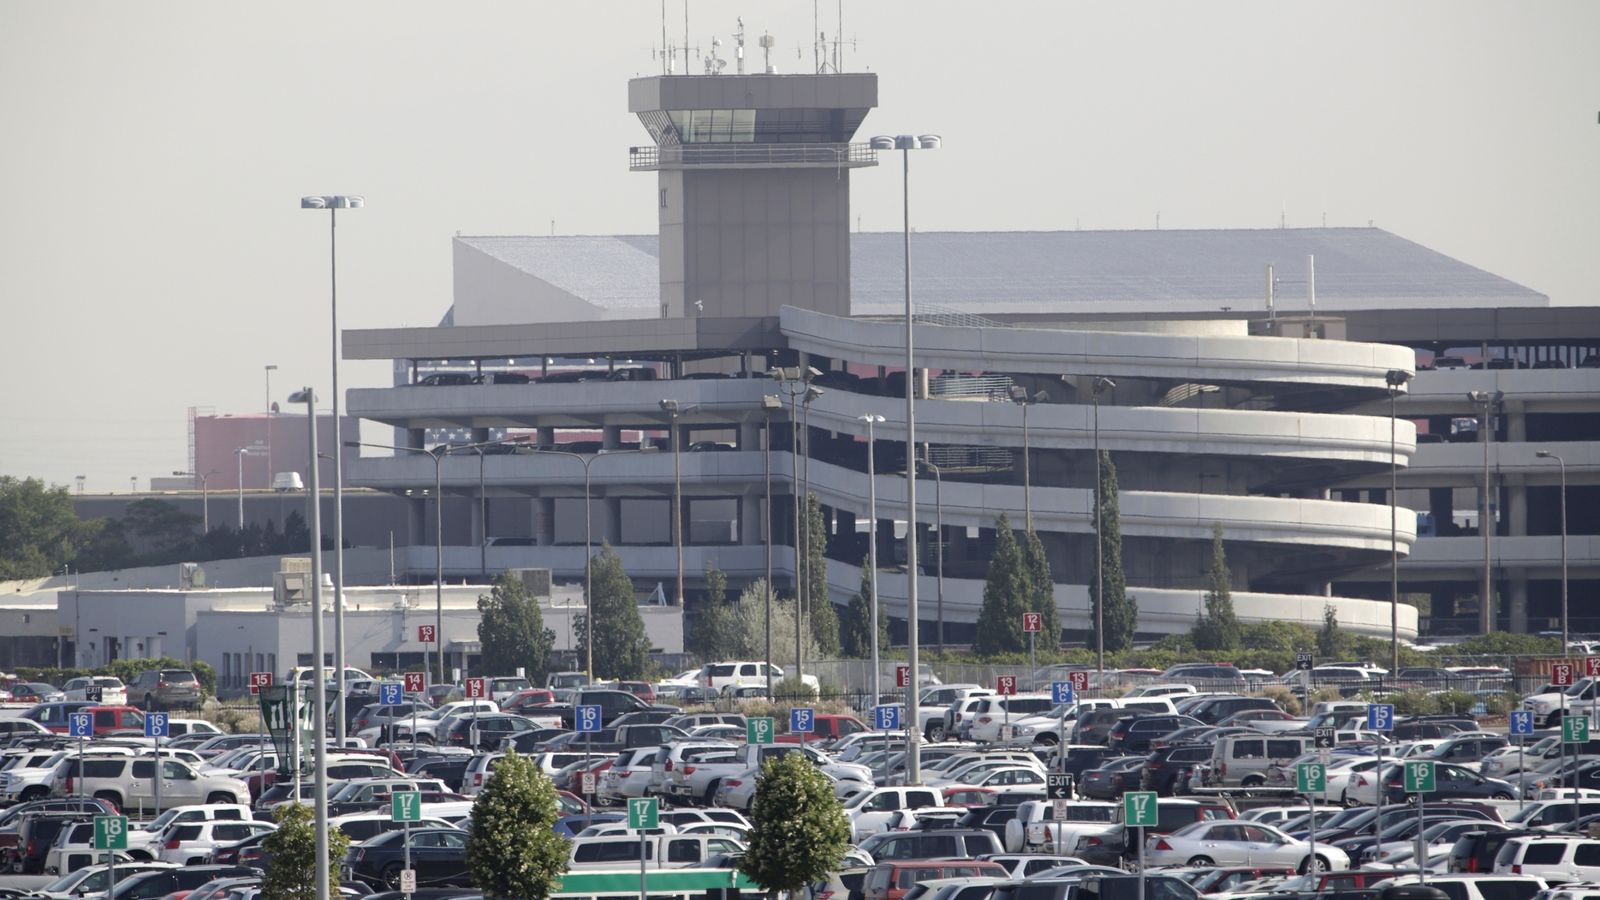 Мъж загина на летището в Солт Лейк Сити, след като избяга от самолета и се качи в двигателя